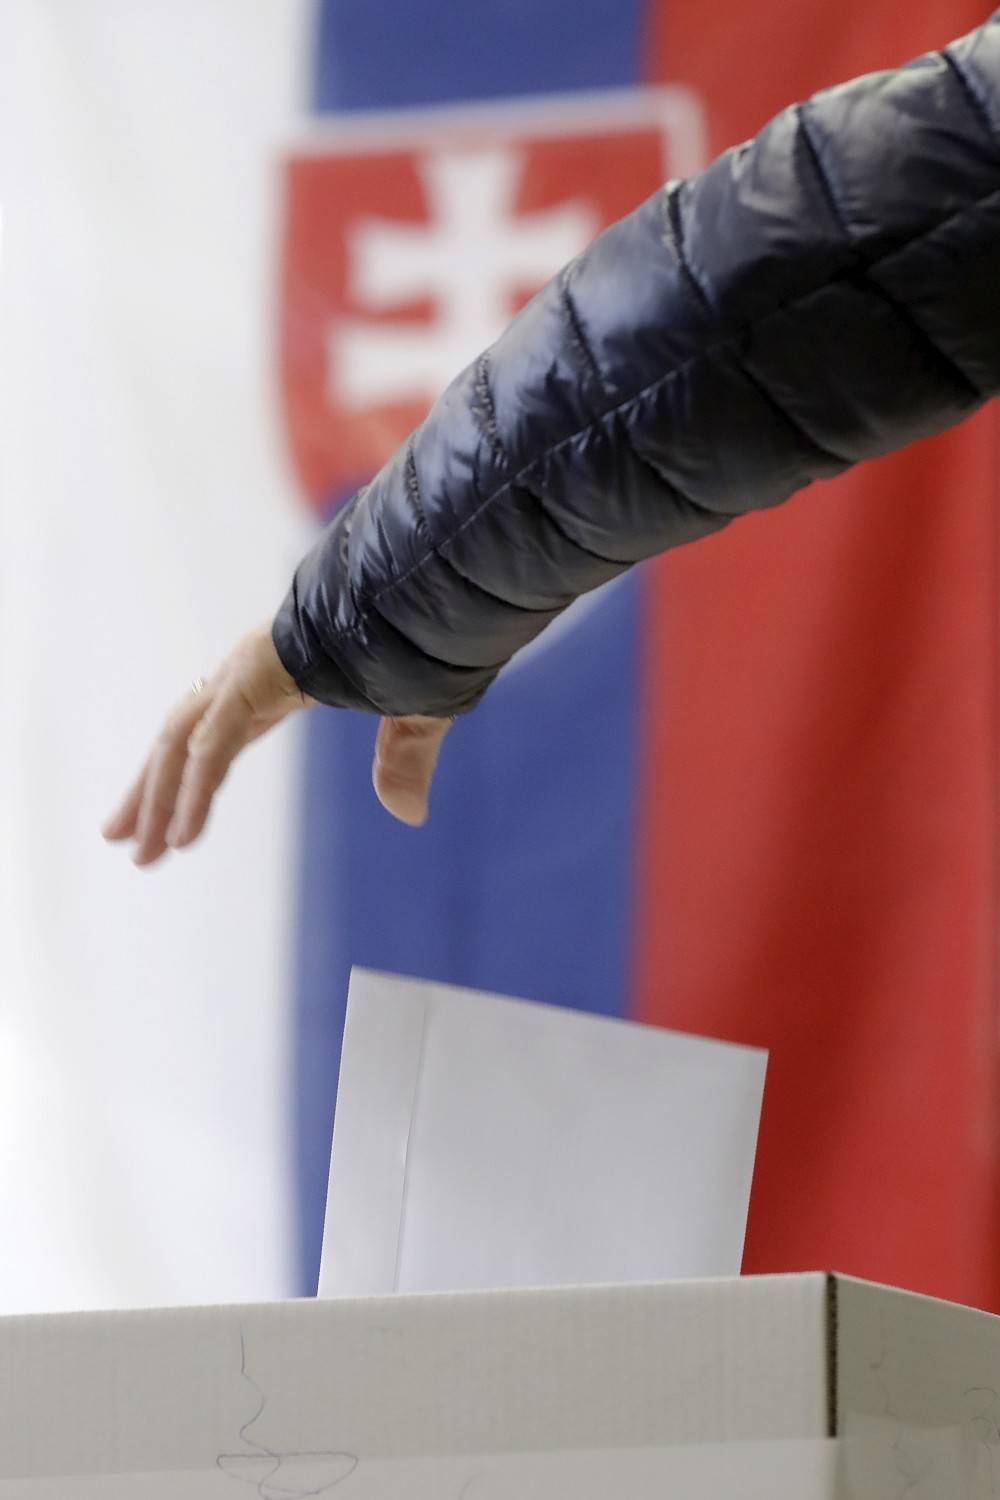 Elezioni in Slovacchia: crolla la sinistra. La maggioranza è di centrodestra